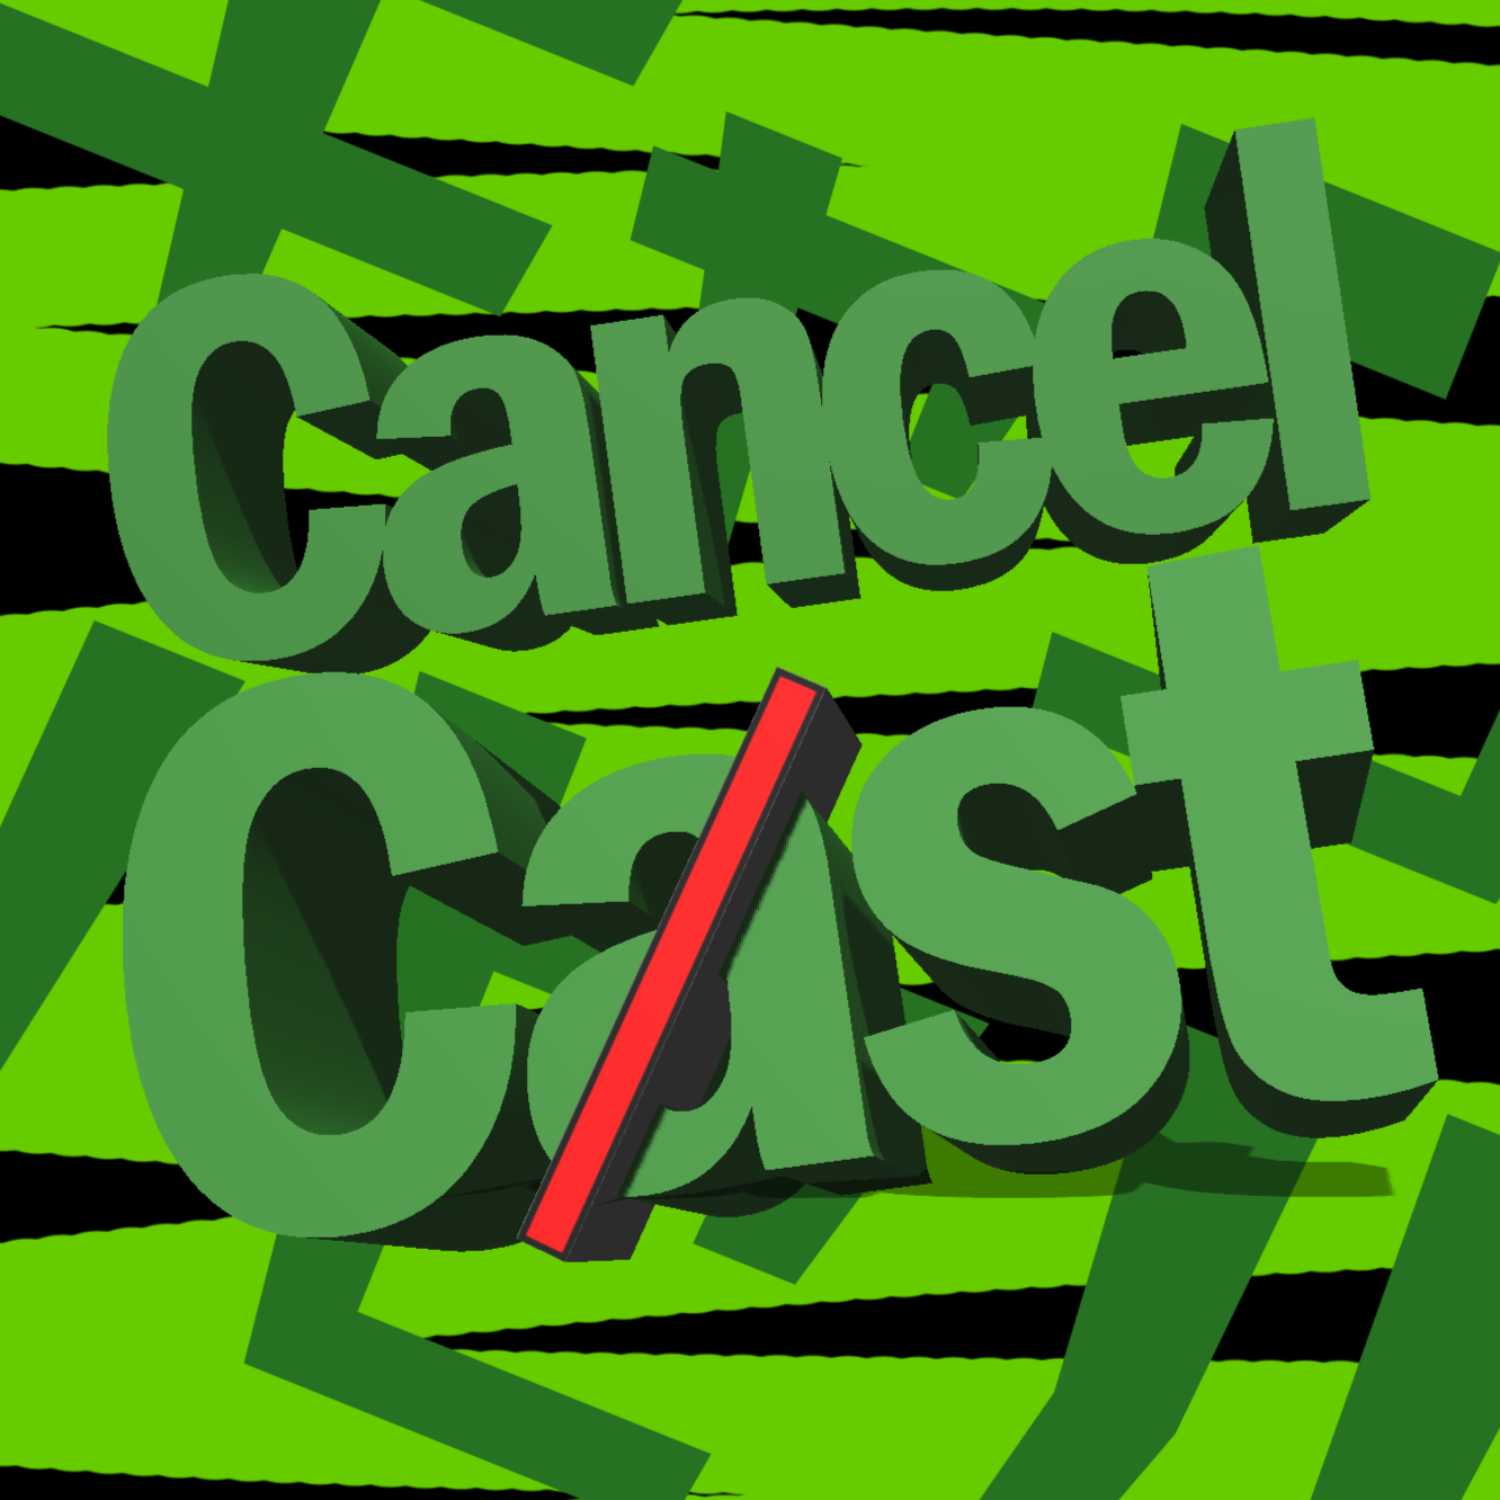 CancelCast